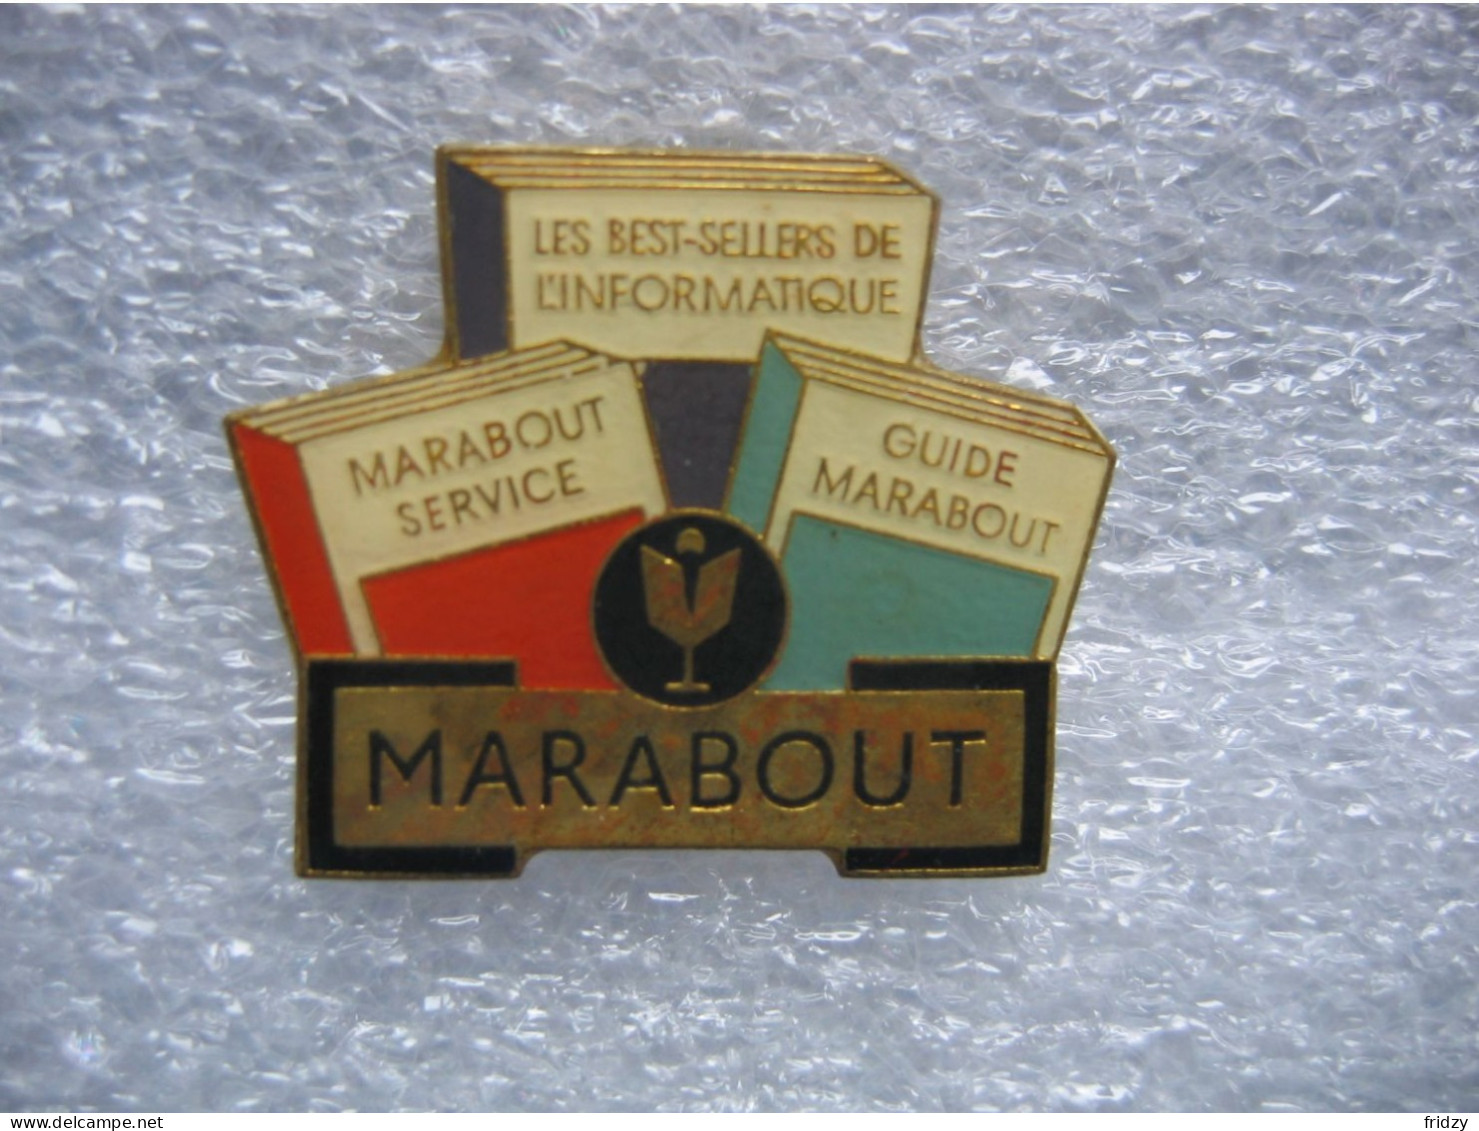 Pin's Du Logiciel Informatique "Marabout". Les Best Sellers De L'informatique. Marabout Service - Guide Marabout - Informatique